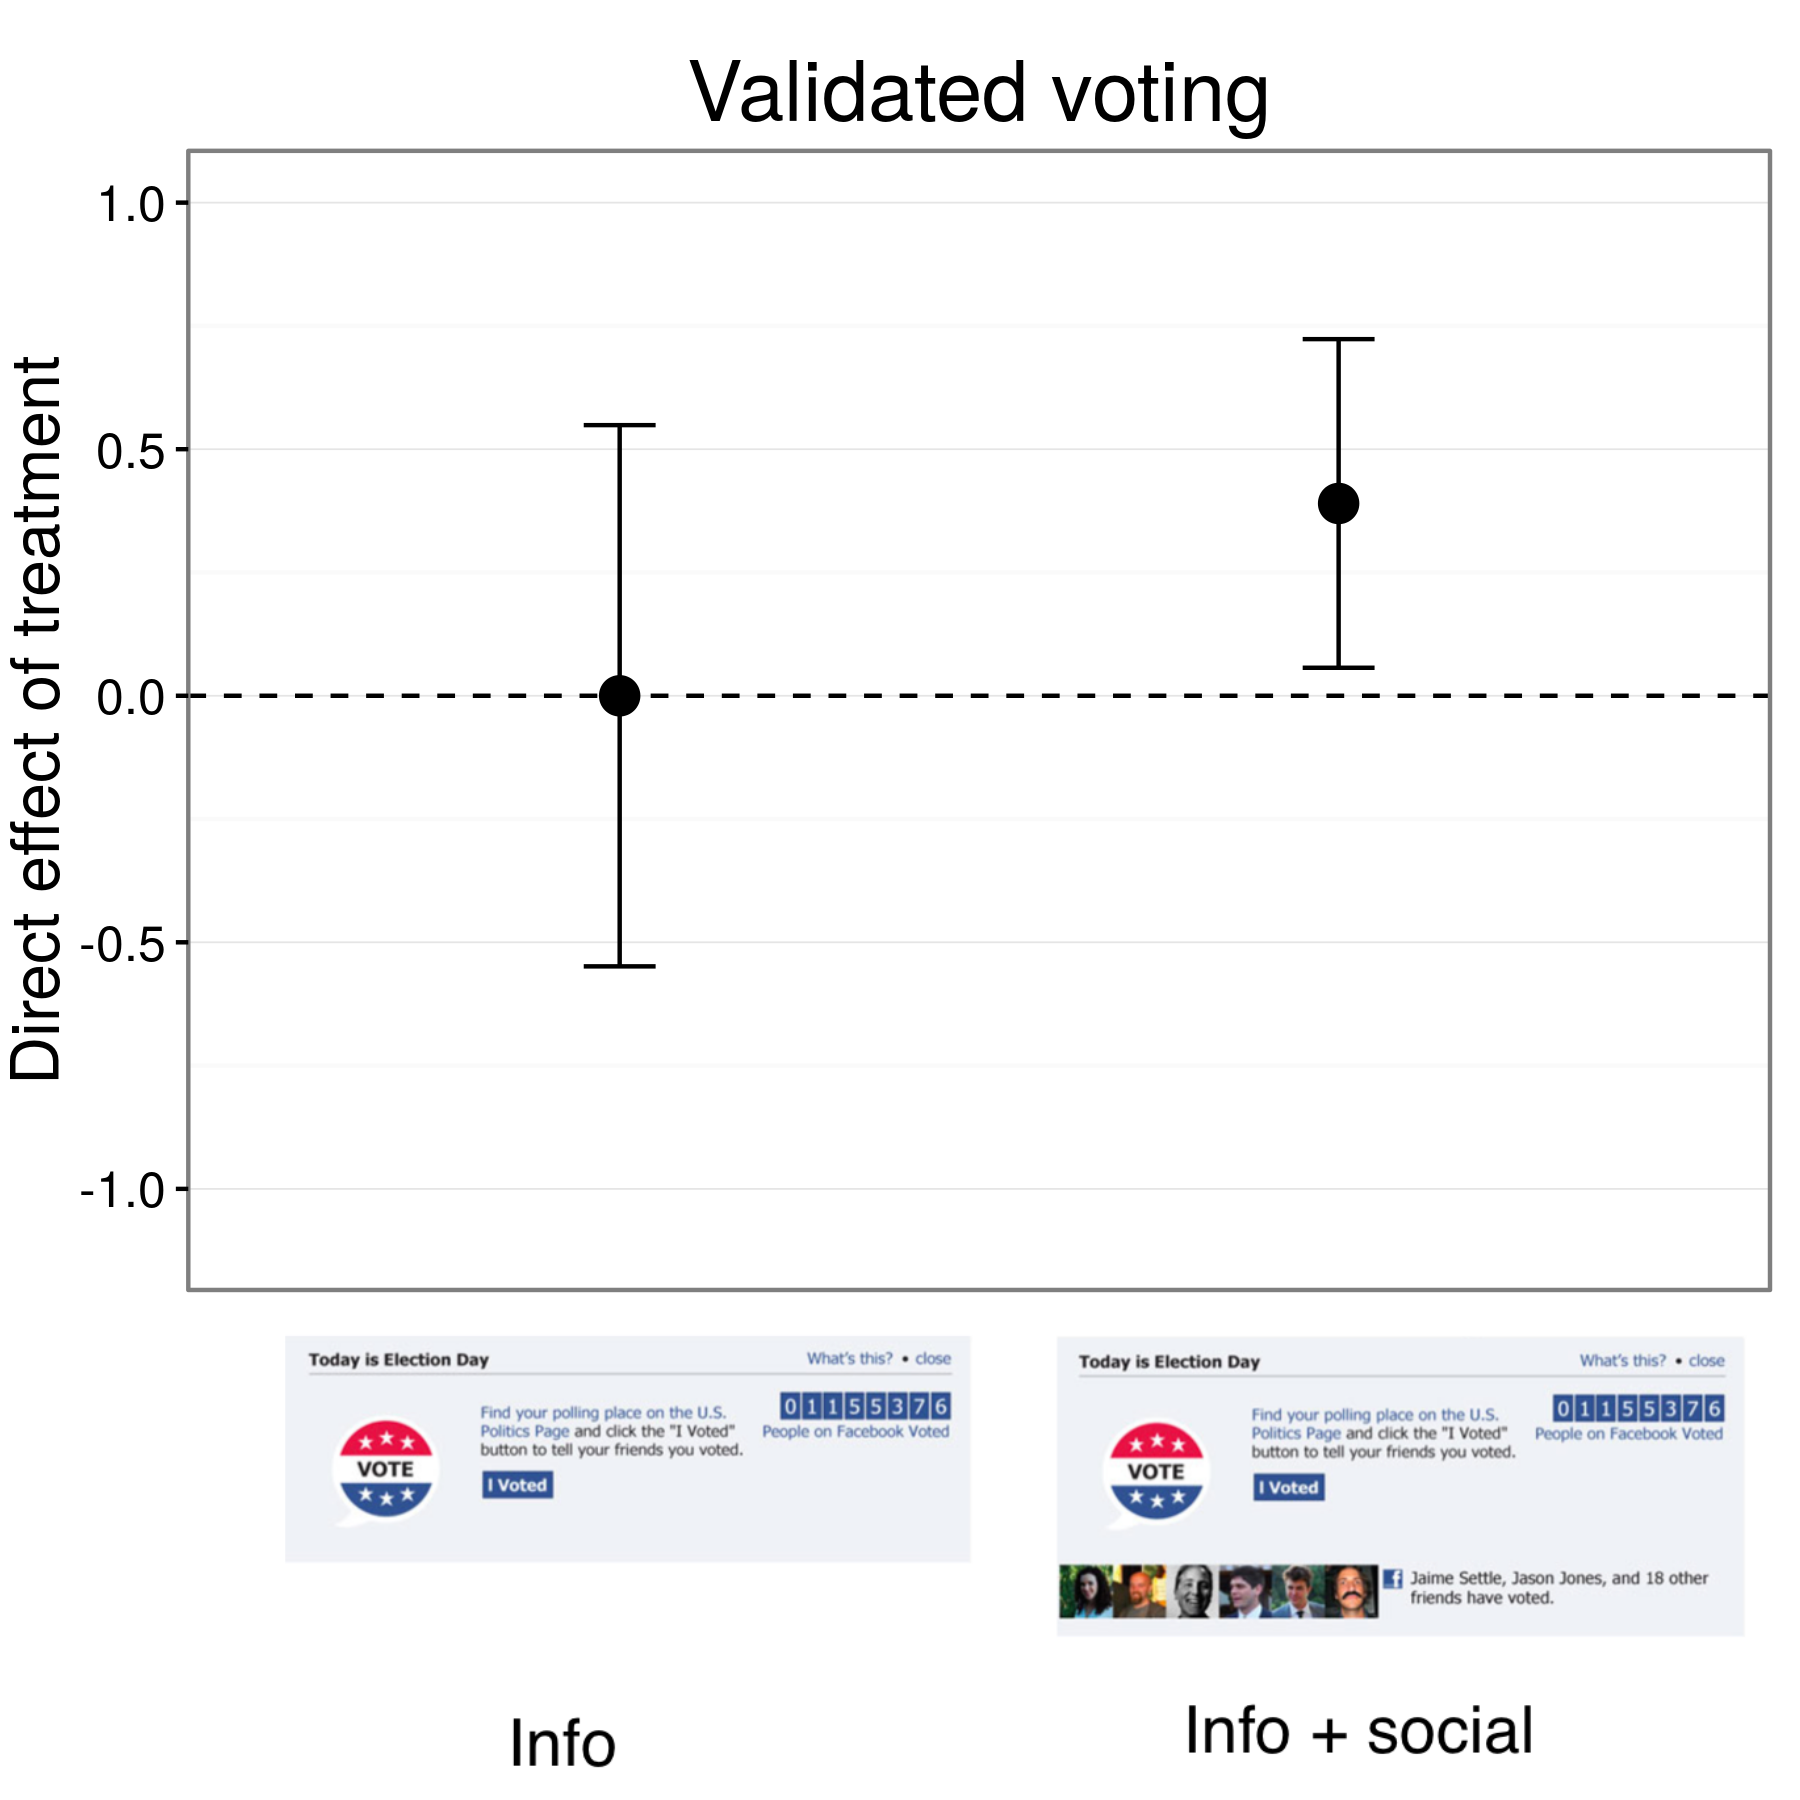 4.17 attēls: Rezultāti no get-out-the-balsošana eksperimenta Facebook (Bond 2012 et al.). Dalībnieki informācijas grupā balsoja ar tādu pašu likmi kā cilvēku kontroles stāvoklī, bet cilvēki, kas informācijas + sociālajai grupai nedaudz augstāku likmi balsoja. Bāri ir aprēķināts 95% ticamības intervālu. Rezultāti grafikā iekļaut apmēram 6000000 dalībniekus kurām pētnieki varētu saskaņot ar balsošanas ierakstiem.